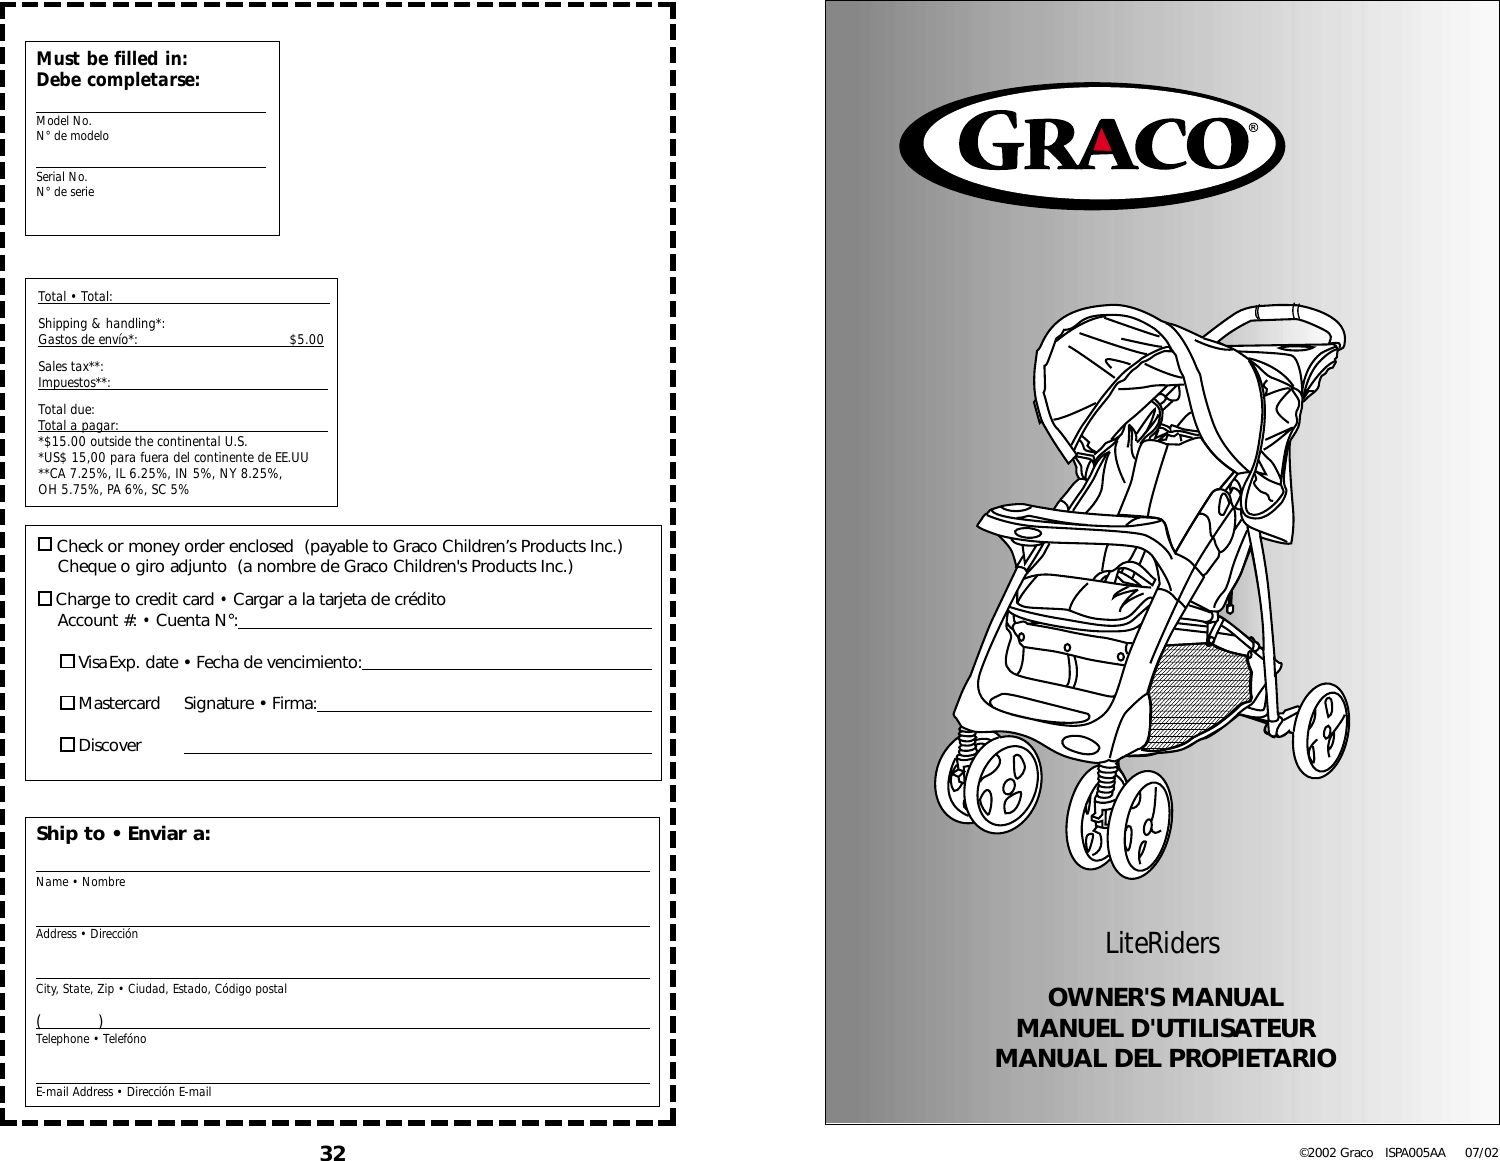 graco-euro-7424-users-manual-ispa005aa